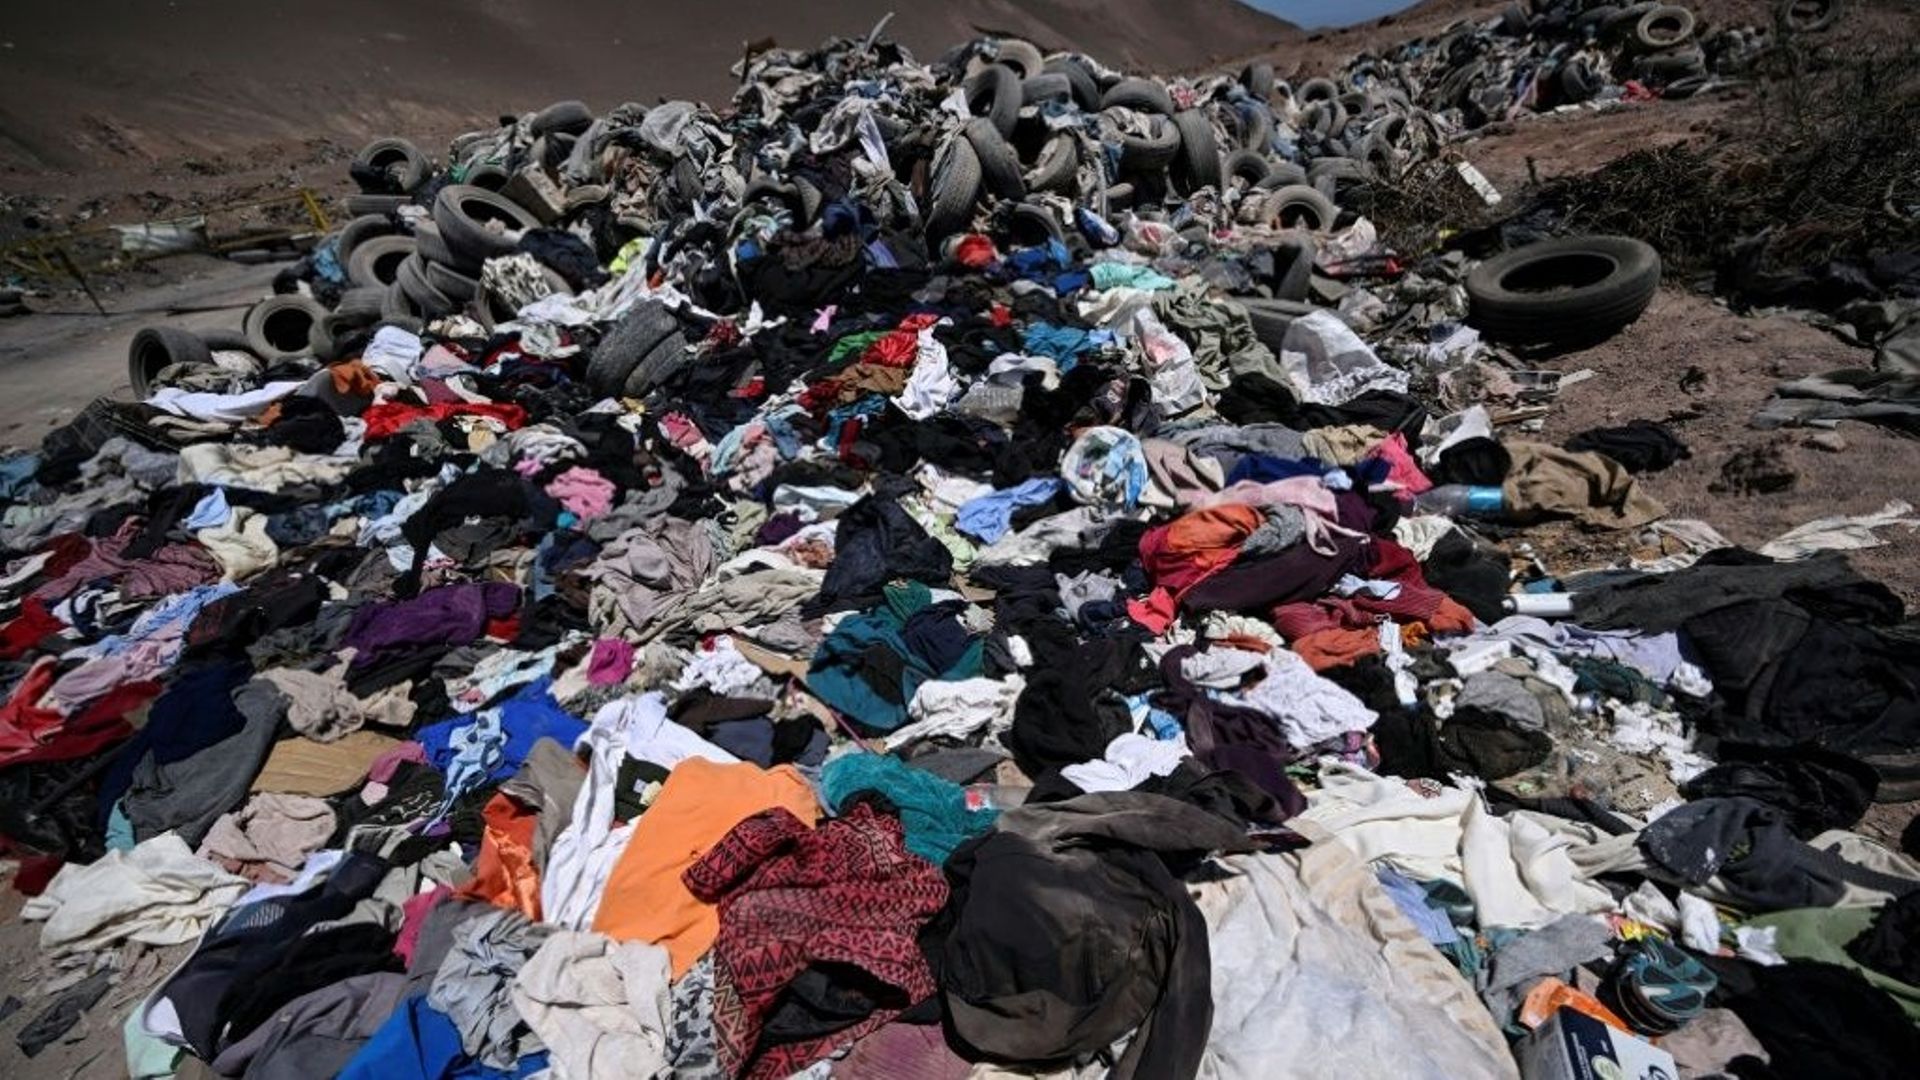 L'écosystème unique du désert d'Atacama menacé par les déchets du monde.